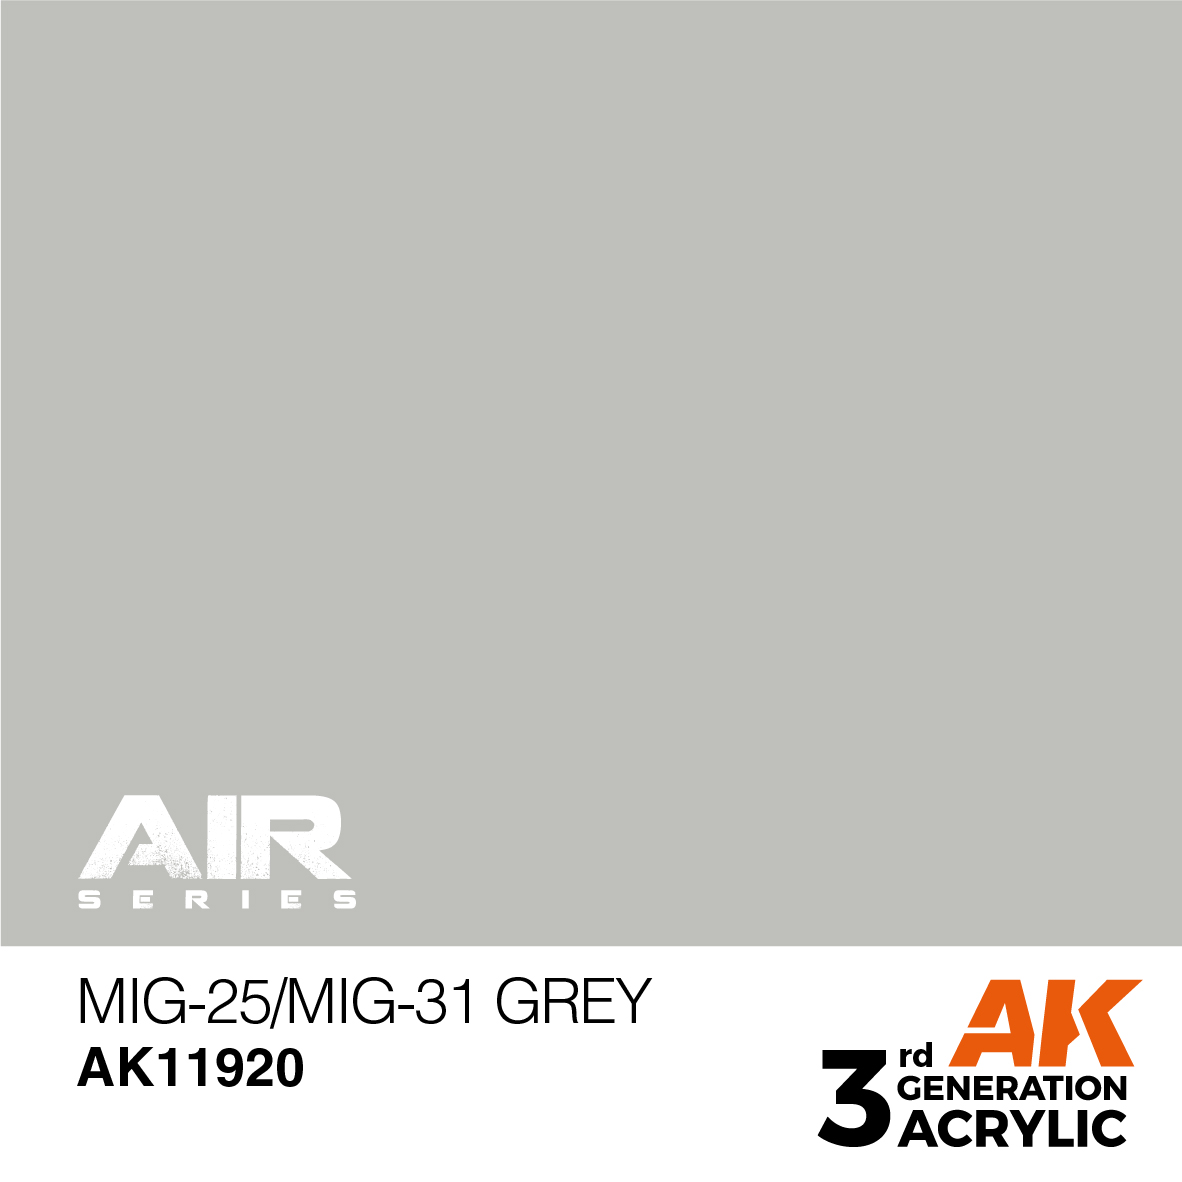 MiG-25/MiG-31 Grey – AIR